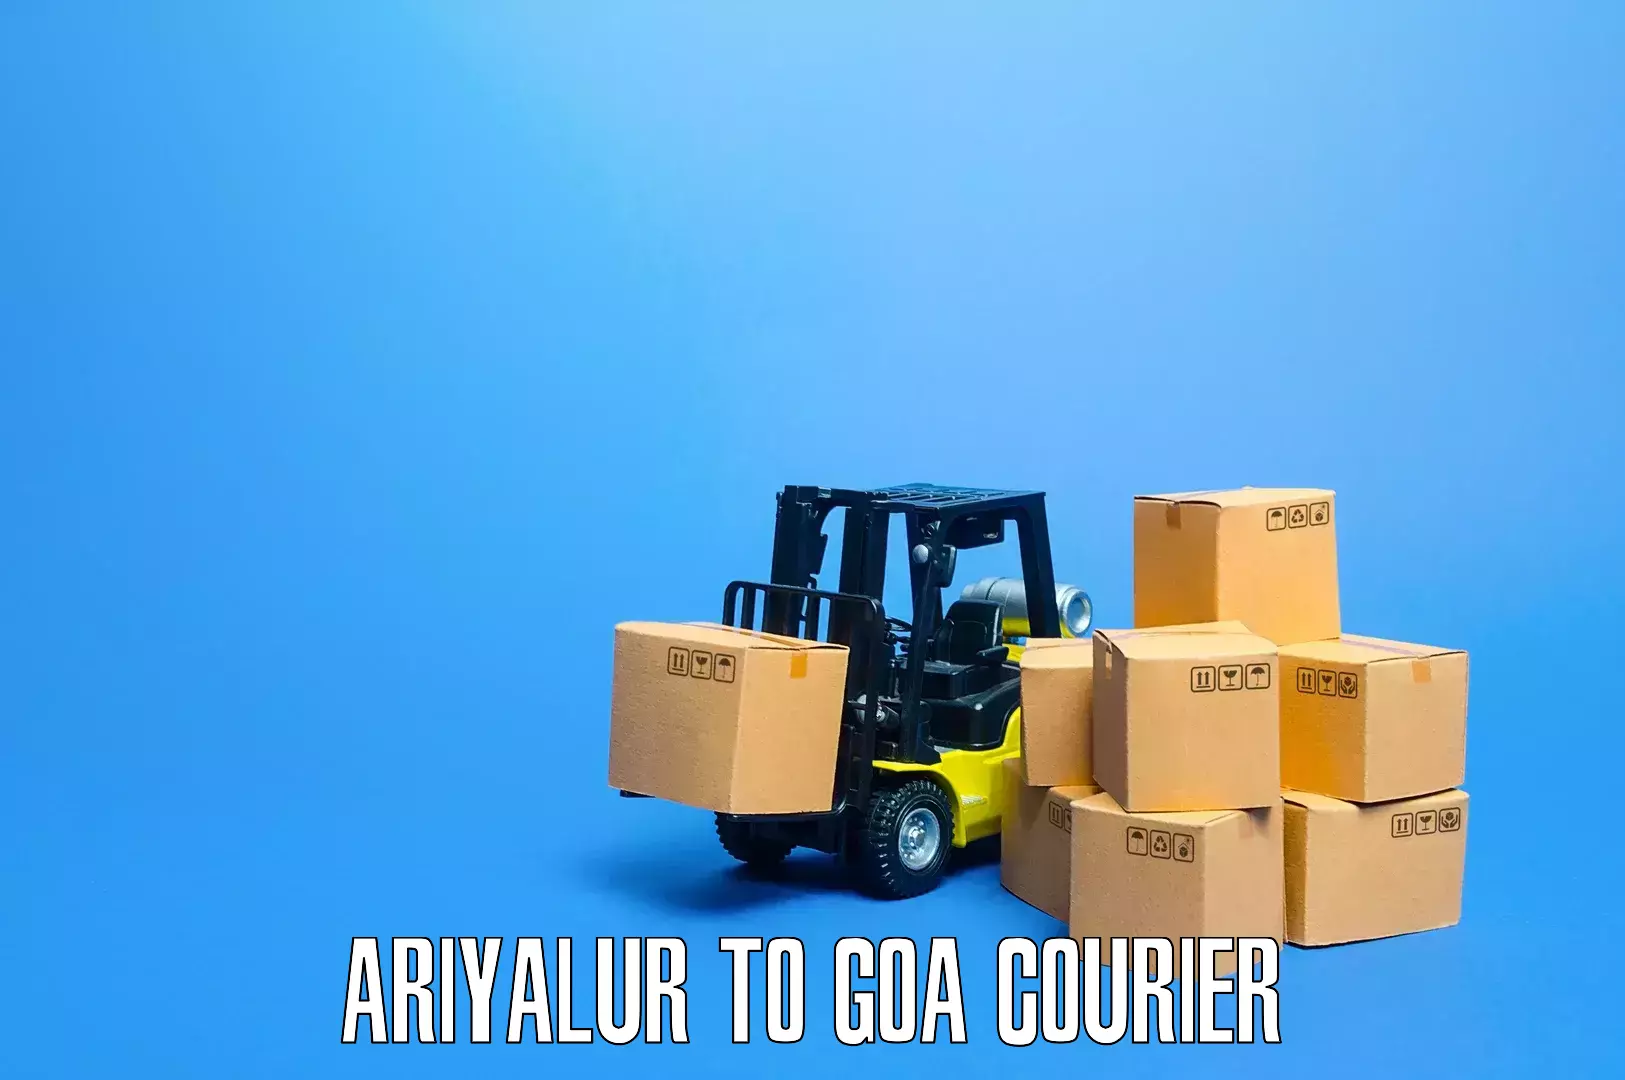 Furniture moving service Ariyalur to Panaji